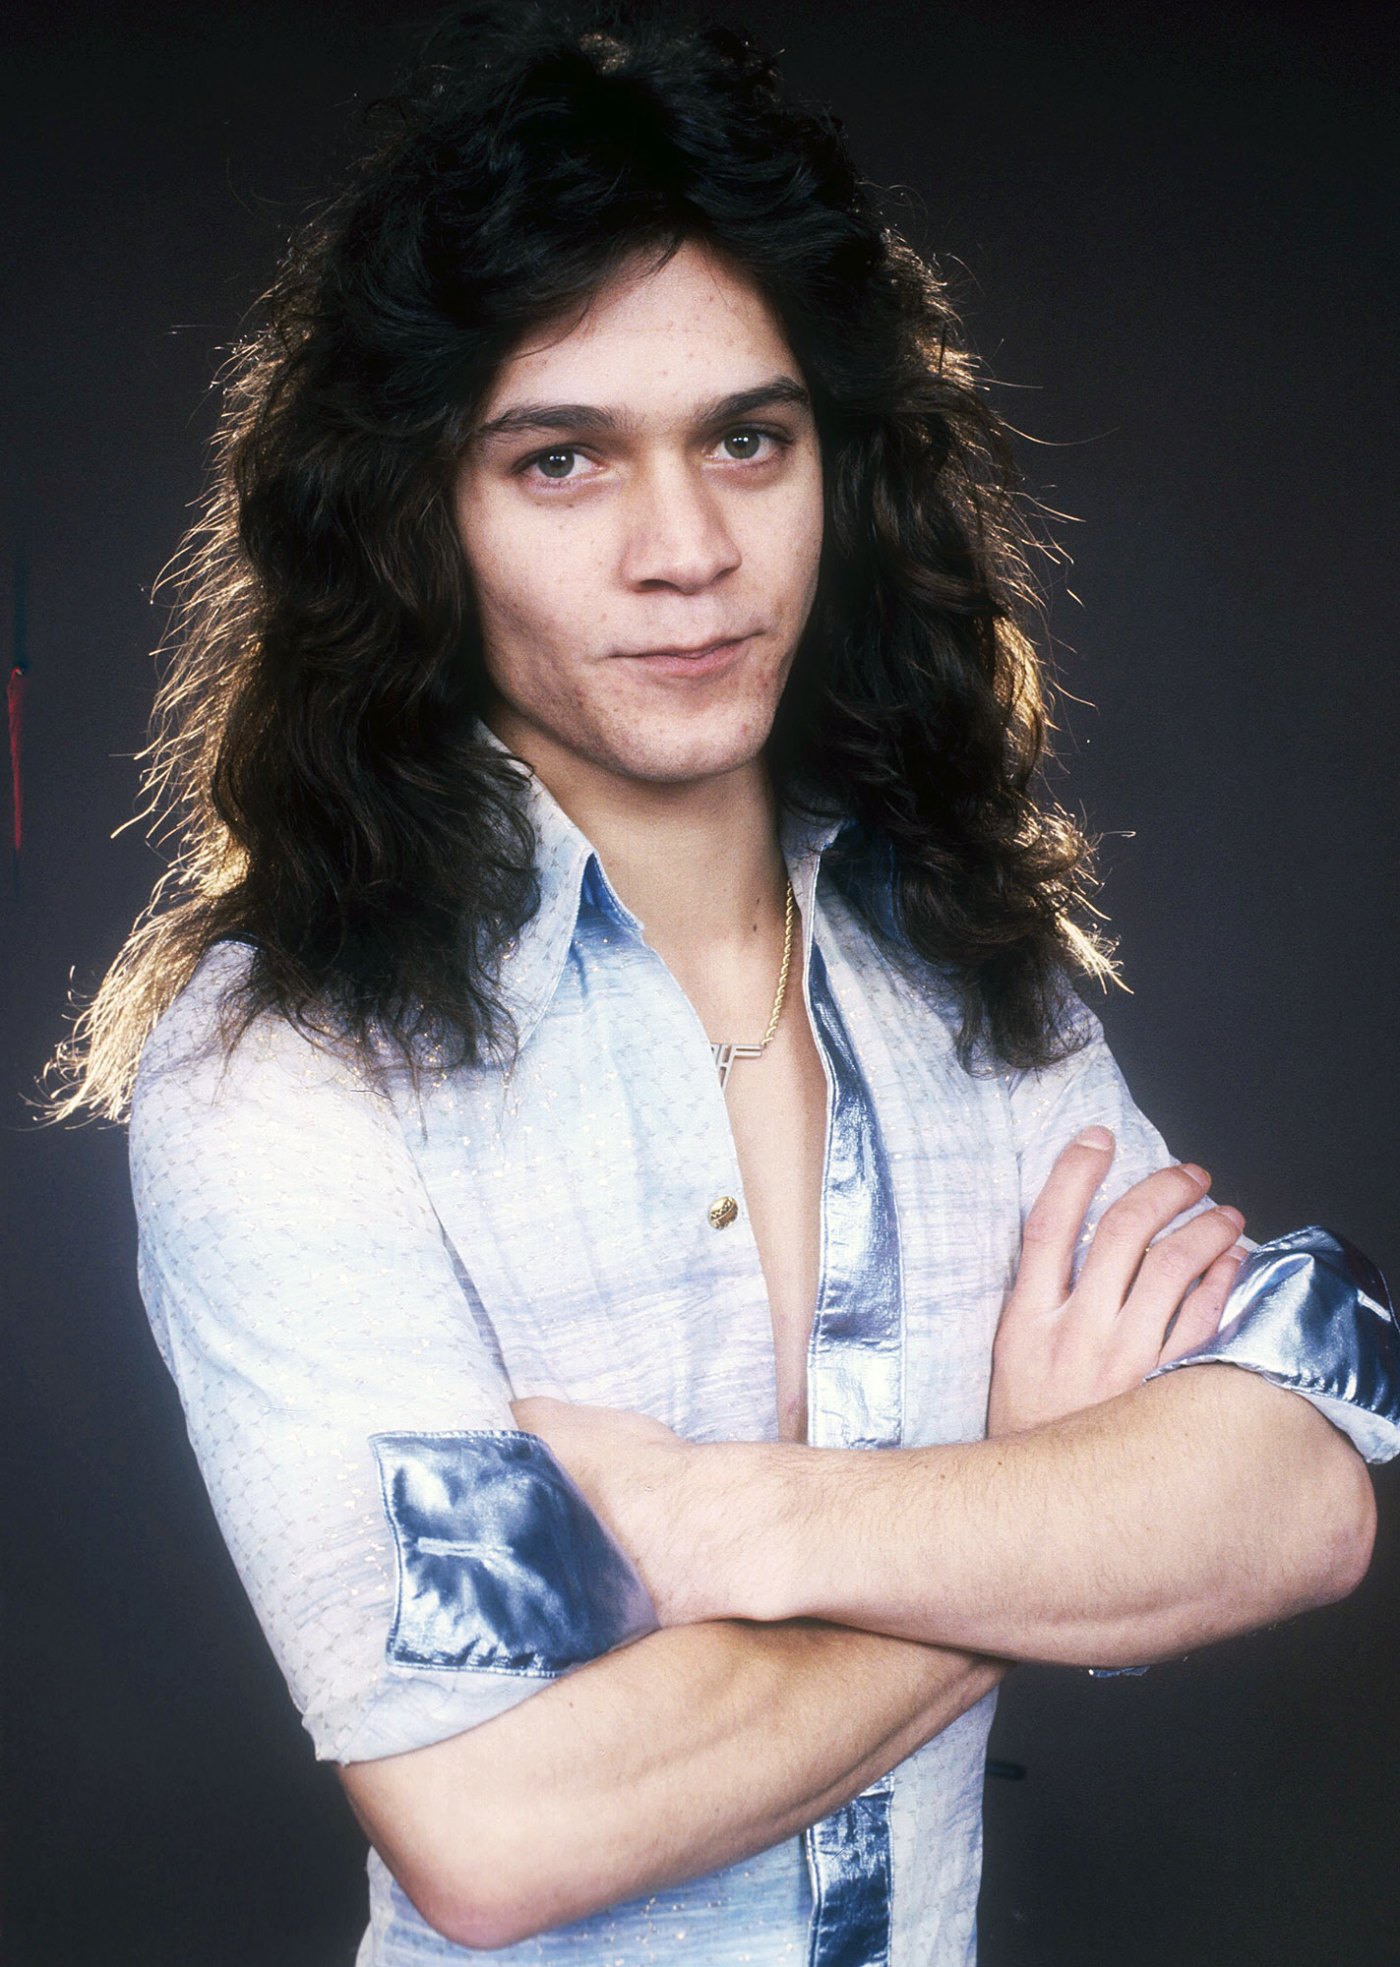 Eddie Van Halen Dead: Van Halen Cofounder Dies at 65